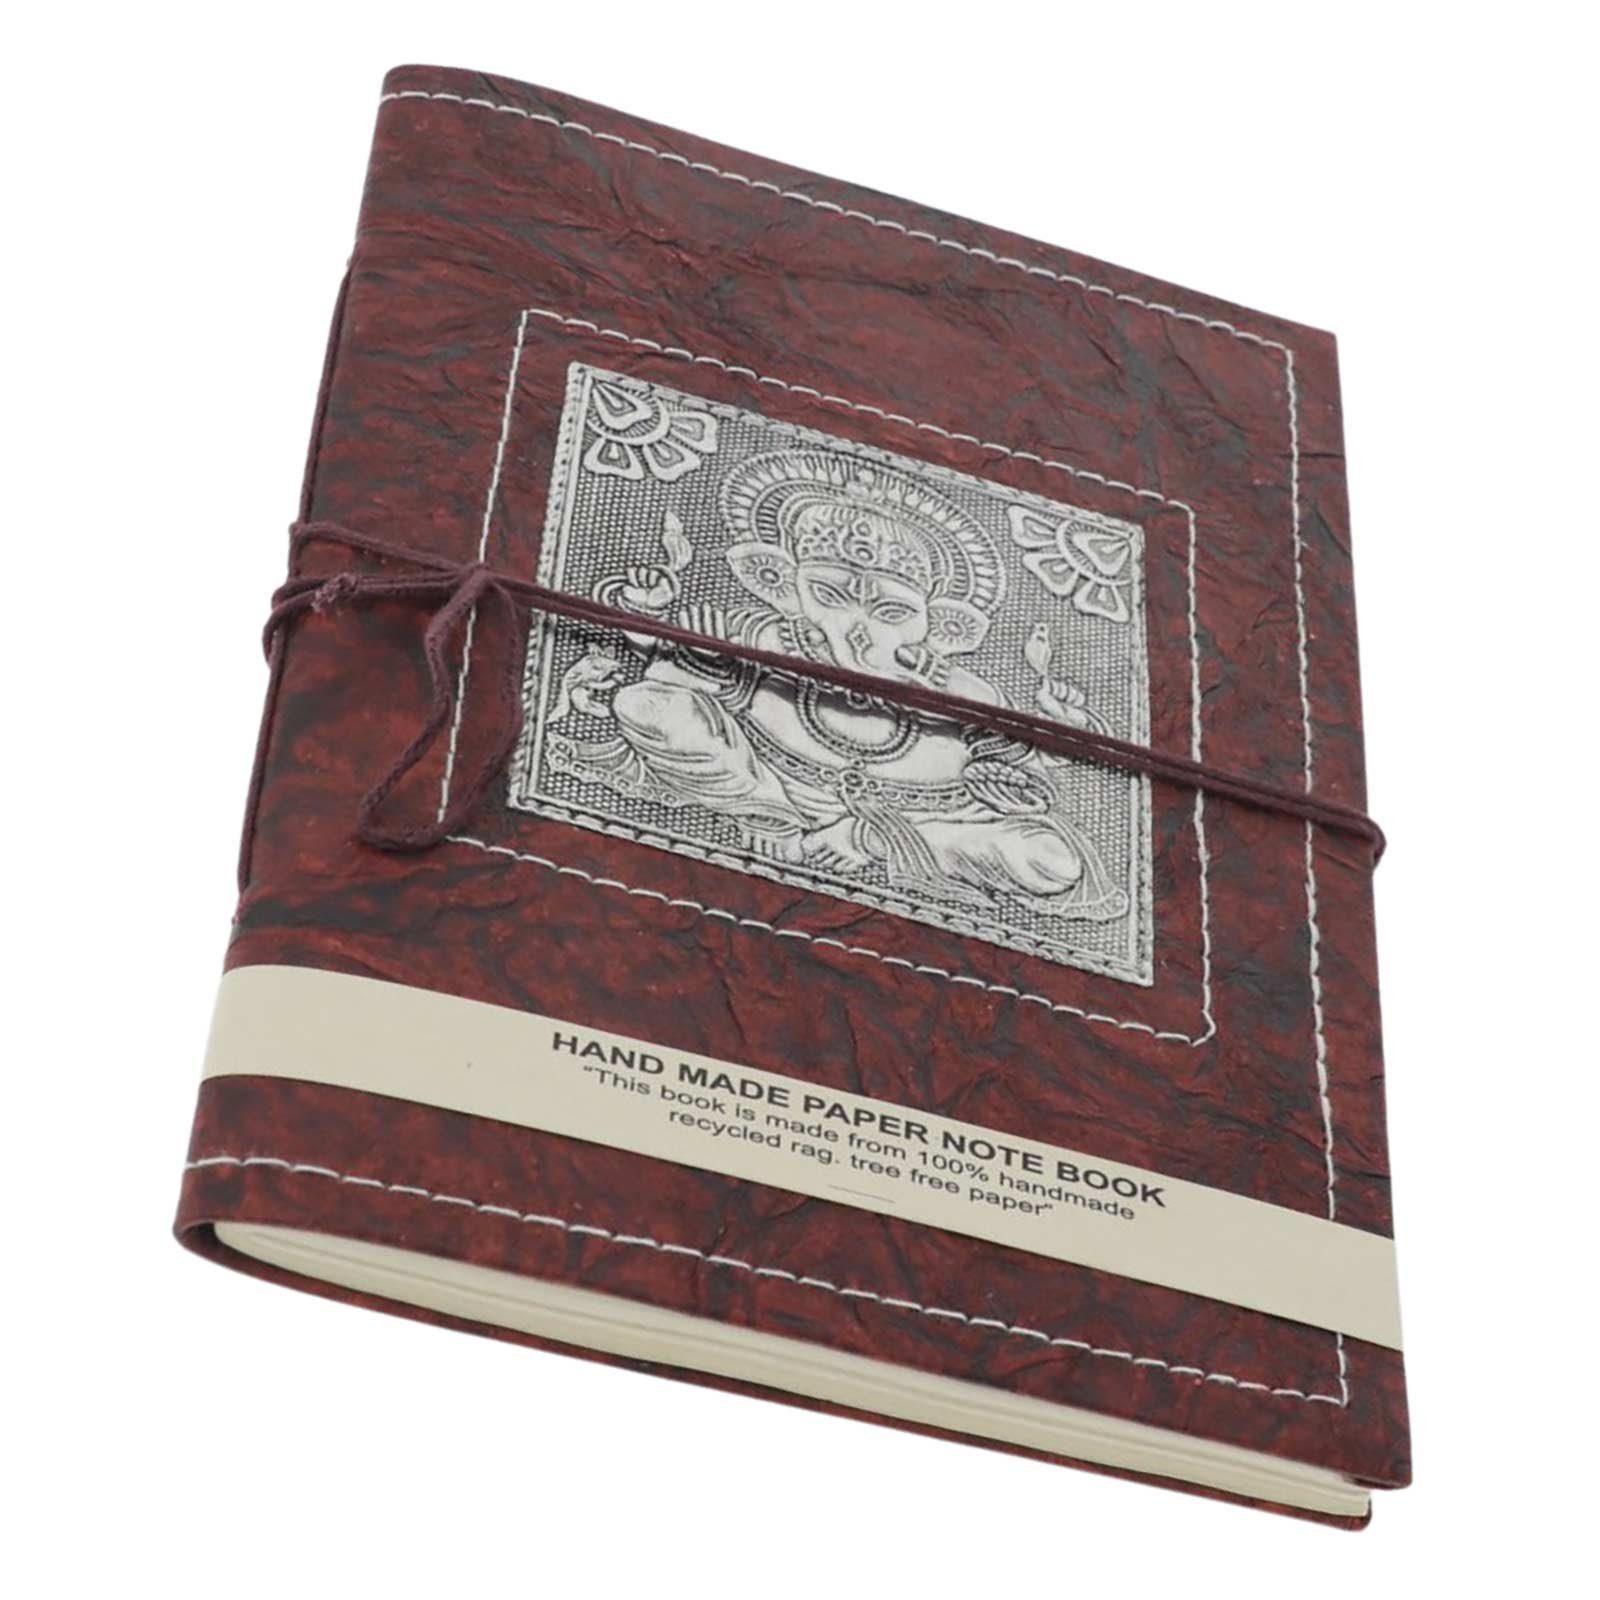 KUNST UND MAGIE Tagebuch Tagebuch Poesiealbum handgefertigt Notizbuch Lord Ganesha 25x18cm XL